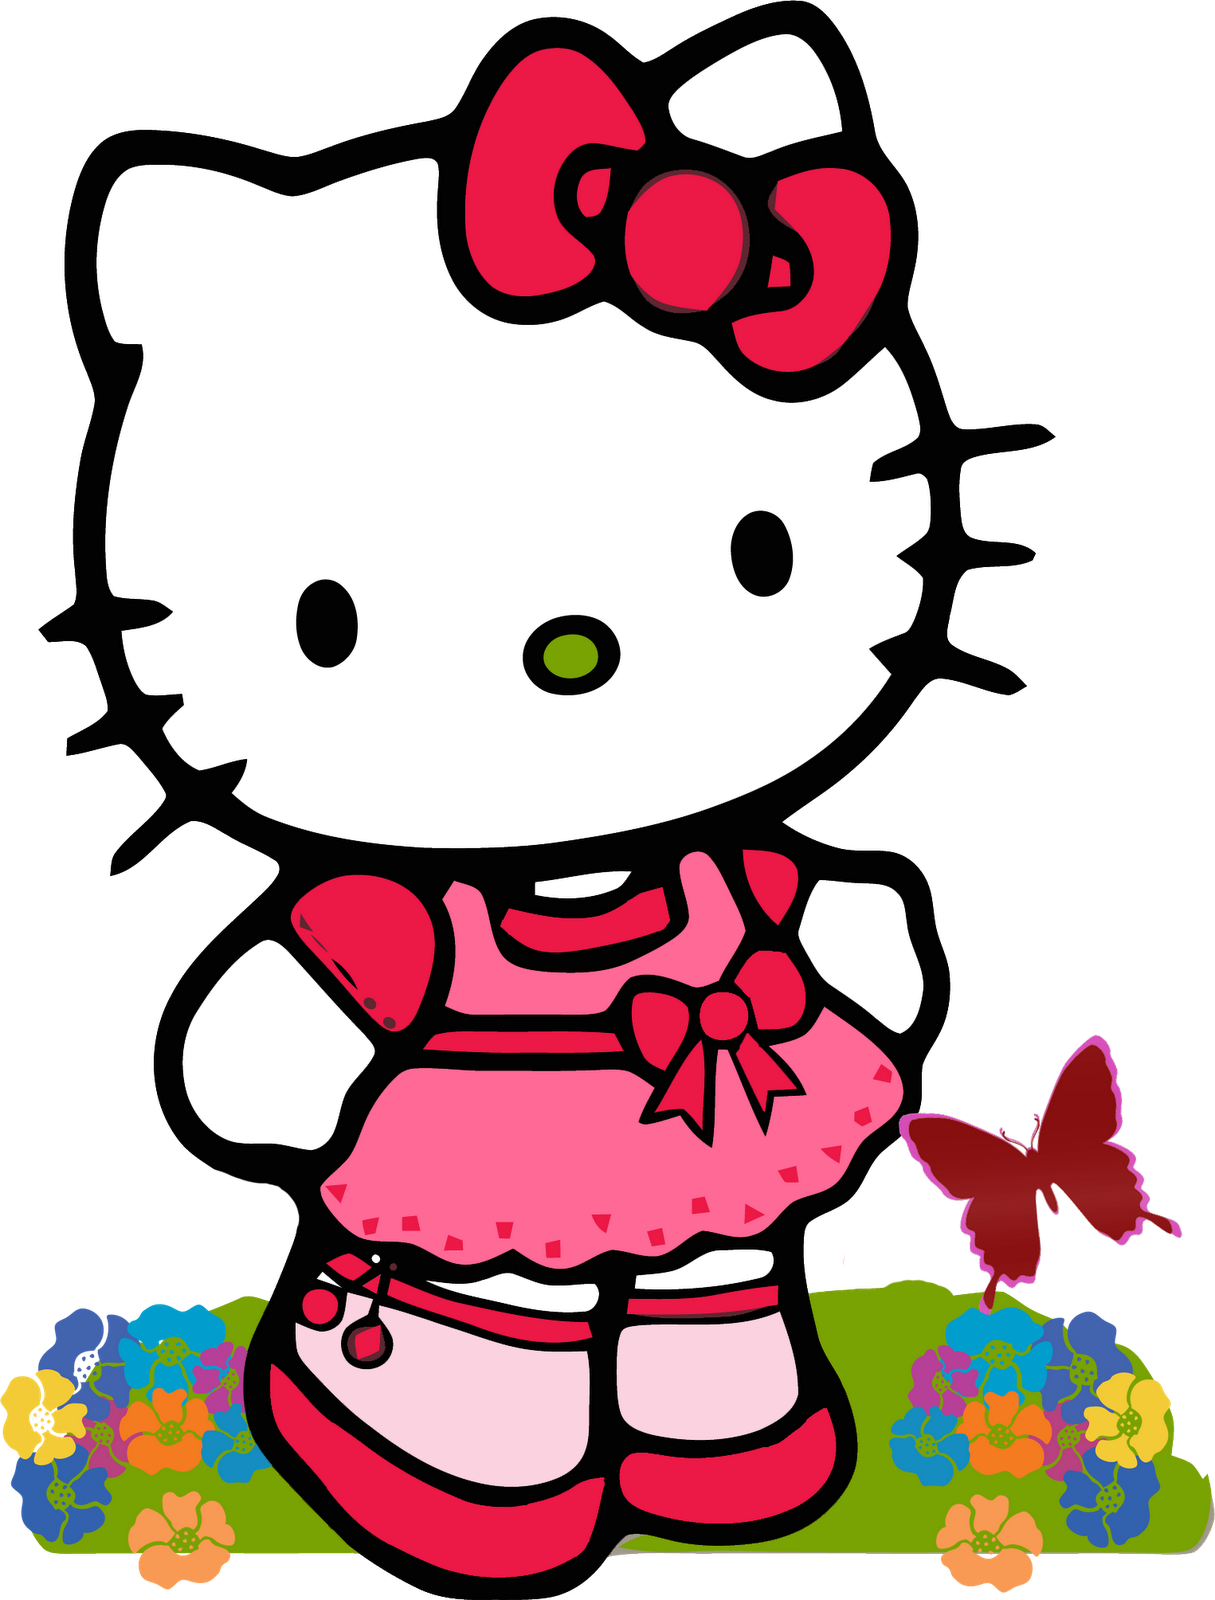 Kumpulan Gambar Foto Boneka Hello Kitty Danbo | Naranua